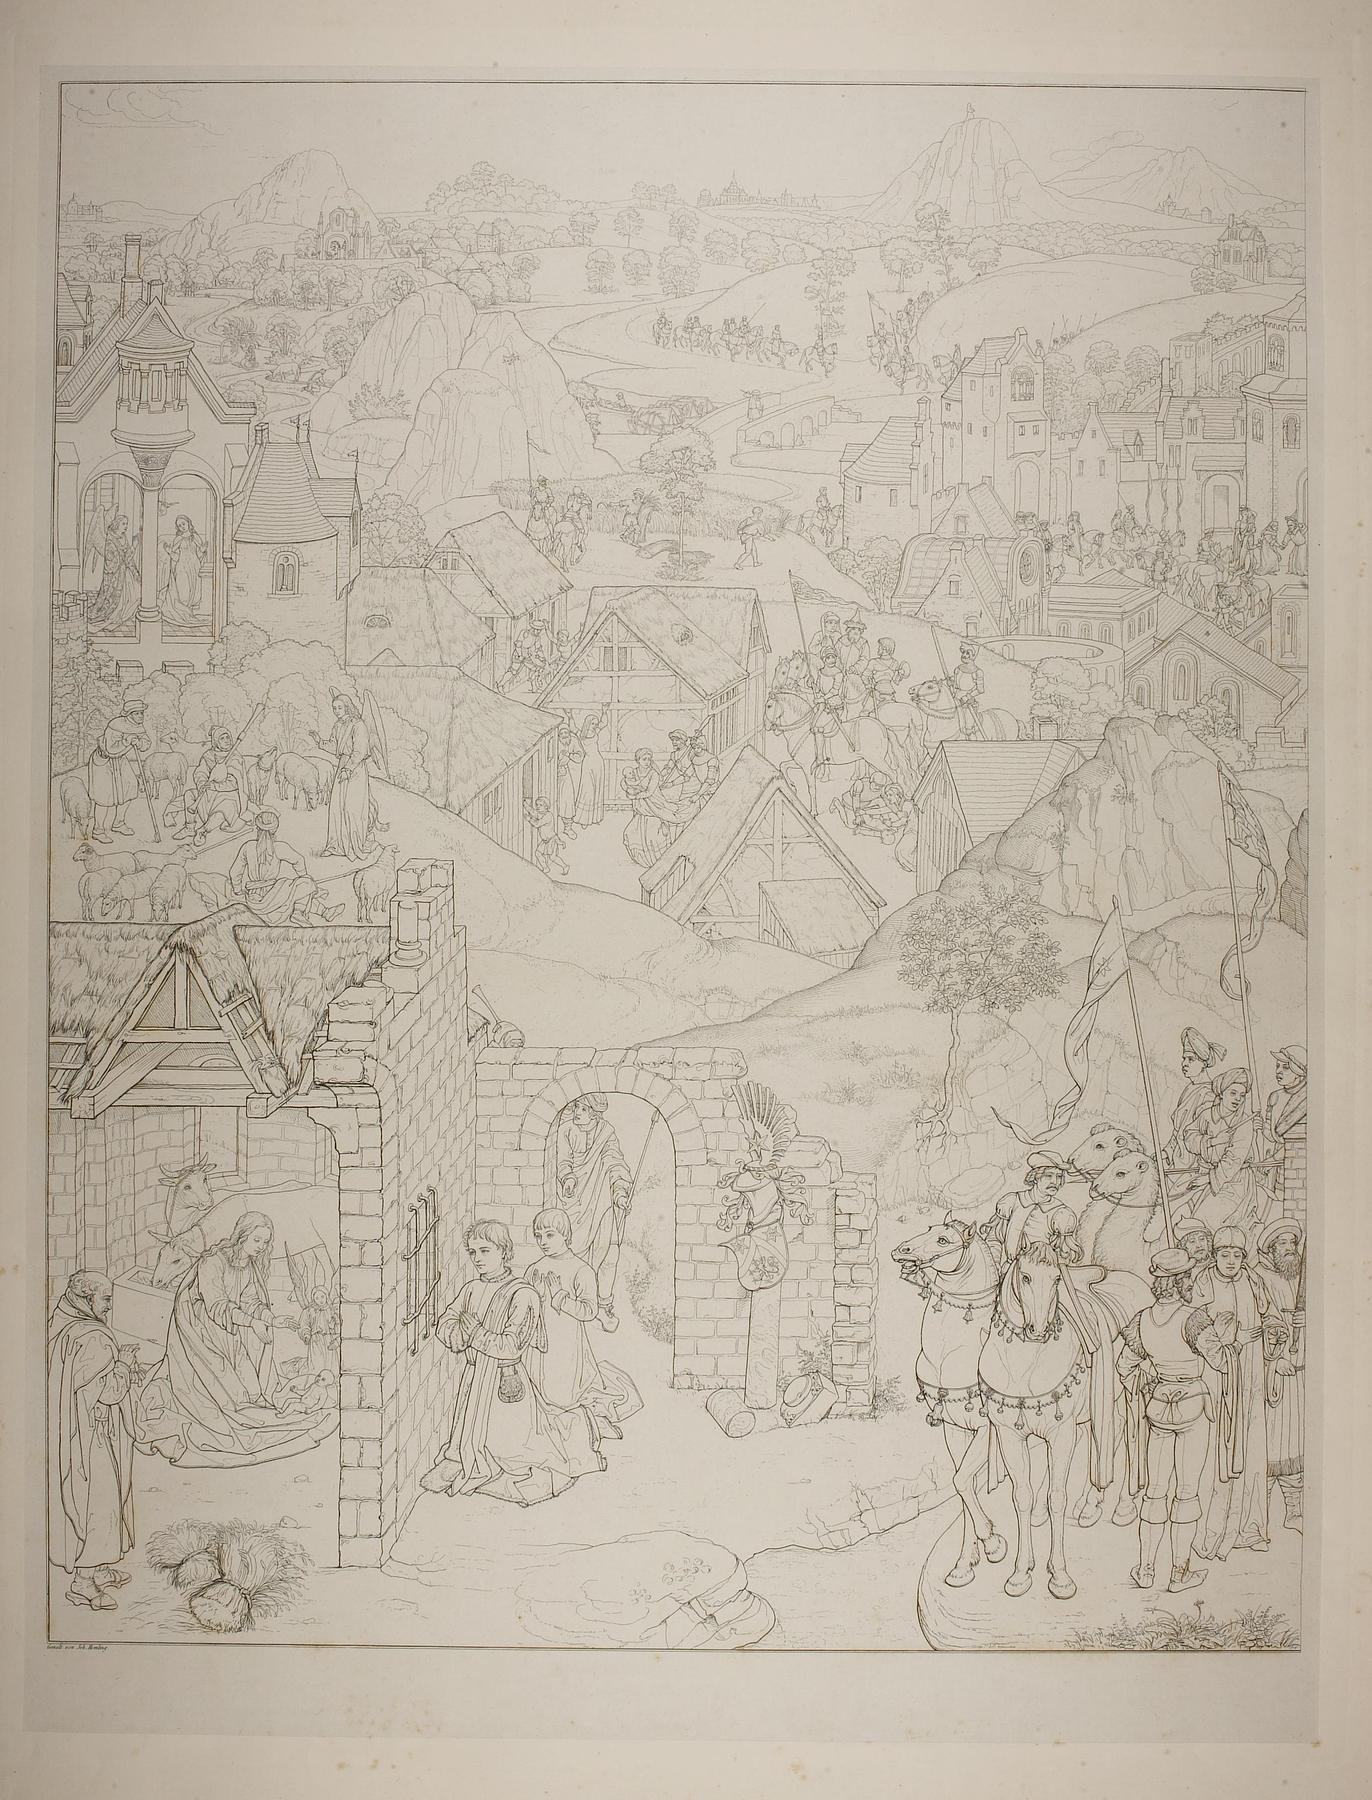 Scener fra Marias liv og stifteren Pieter Bultync og hans sønner, detalje fra Marias syv glæder, E1315